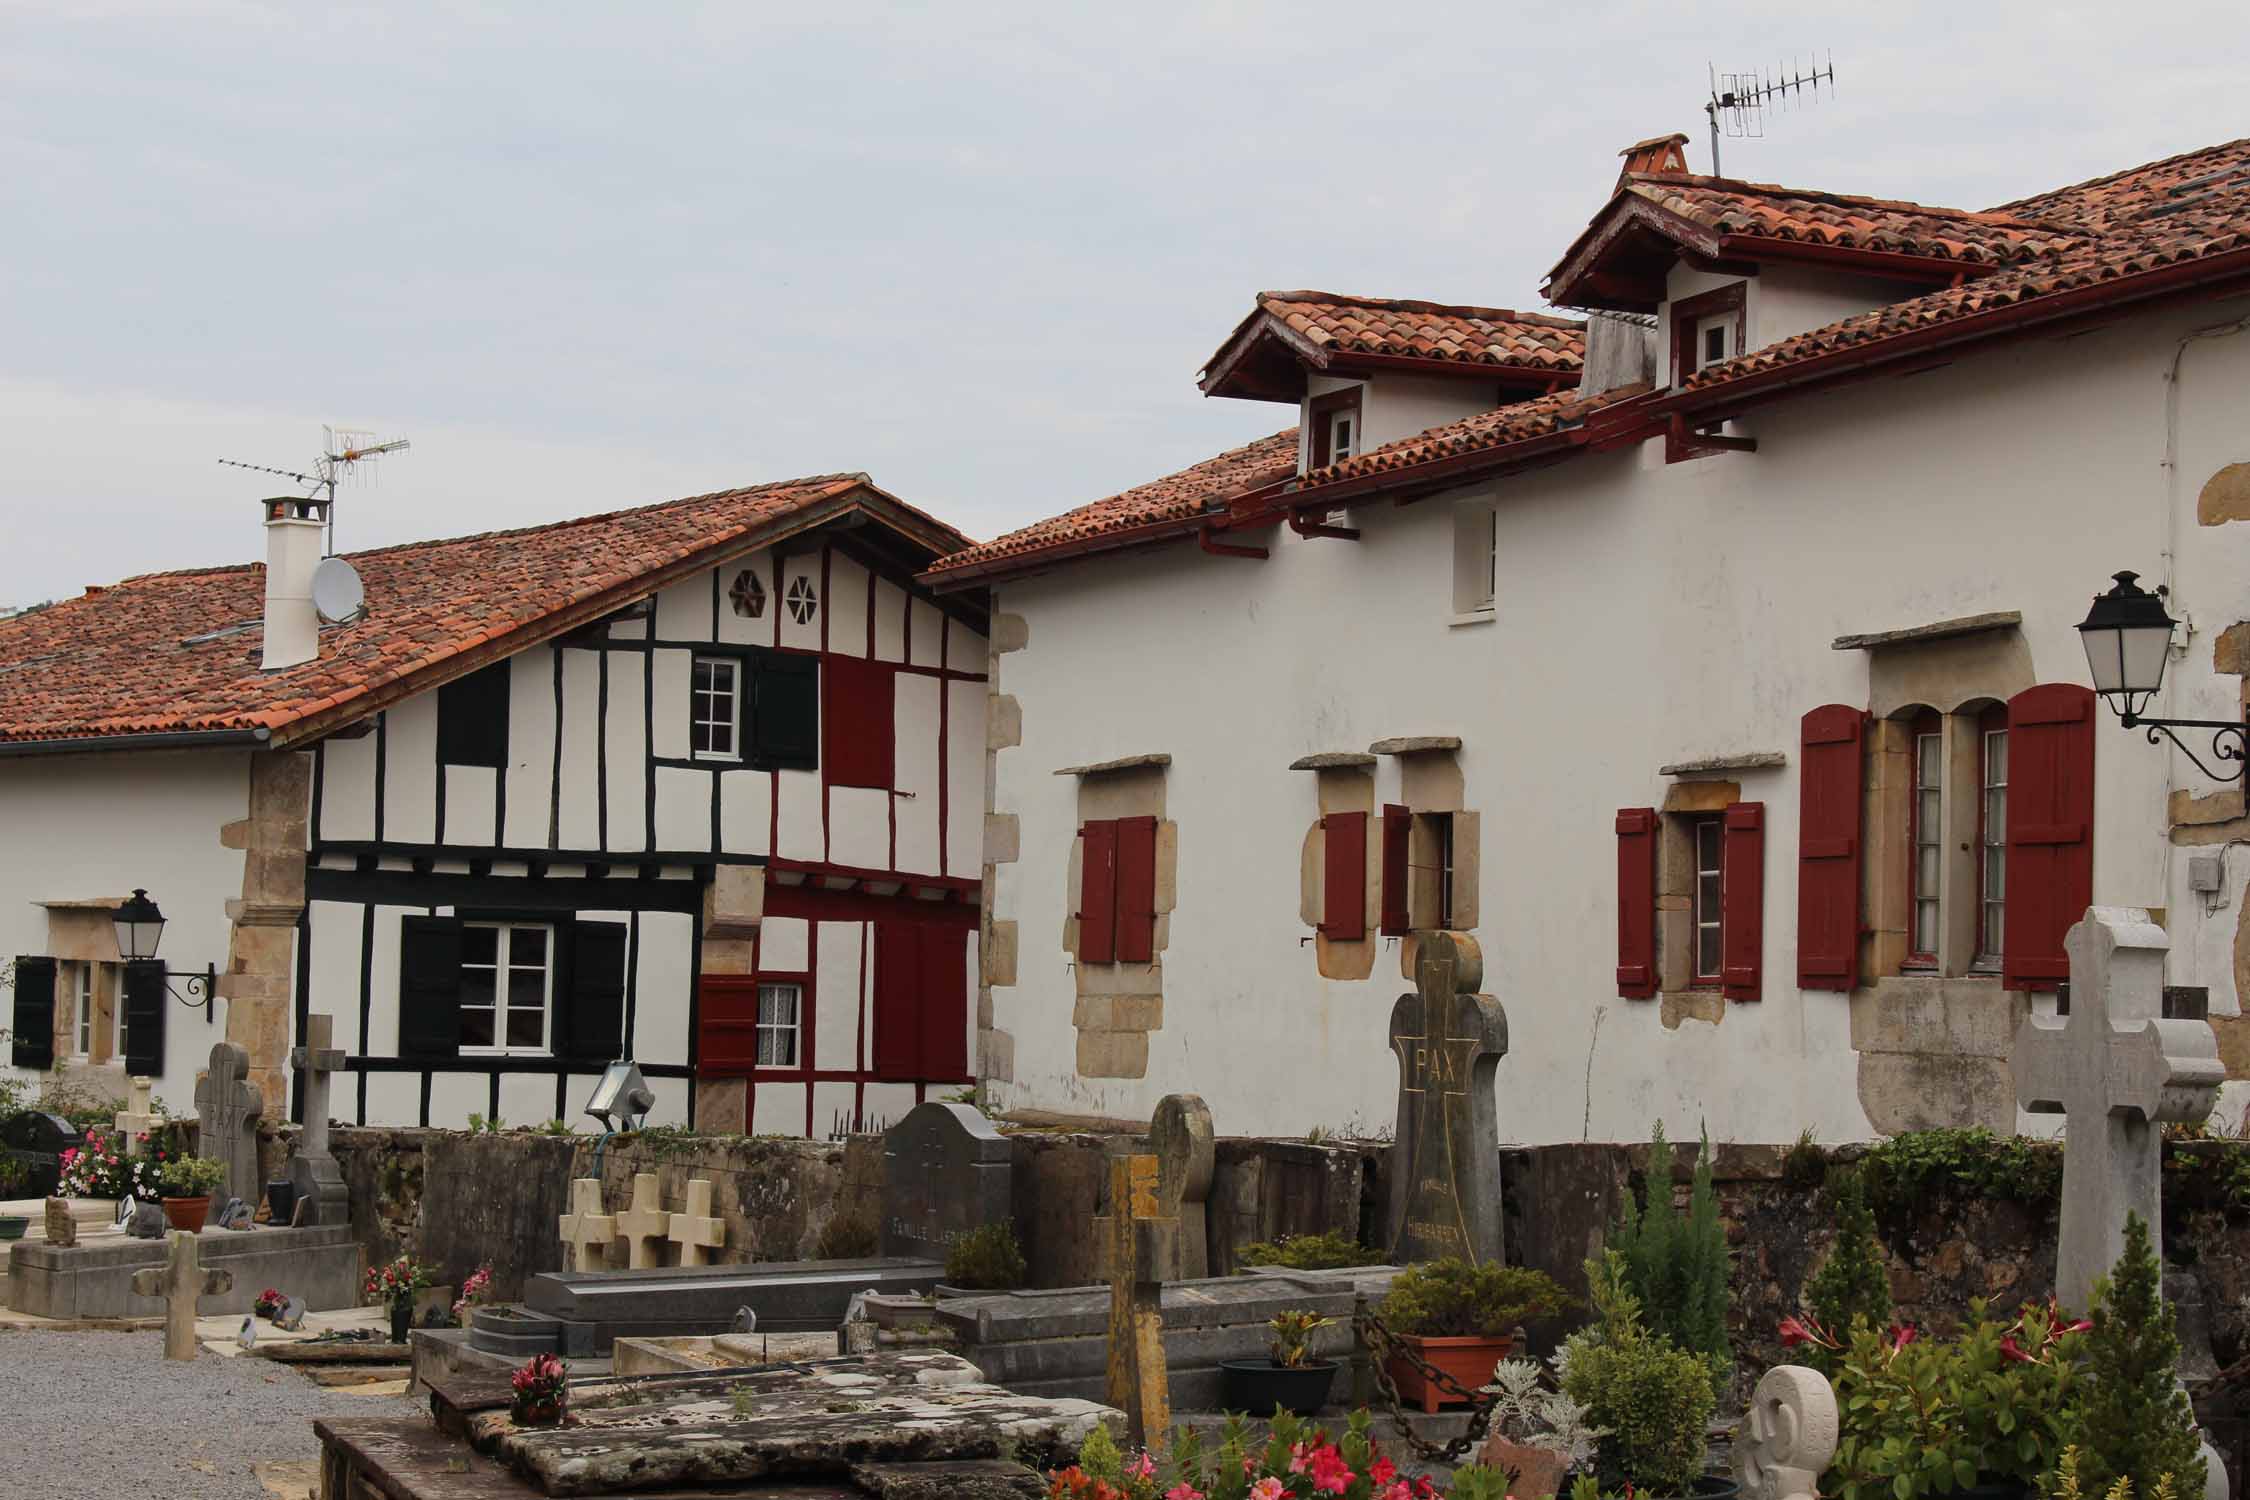 Des maisons typiques basques à Sare